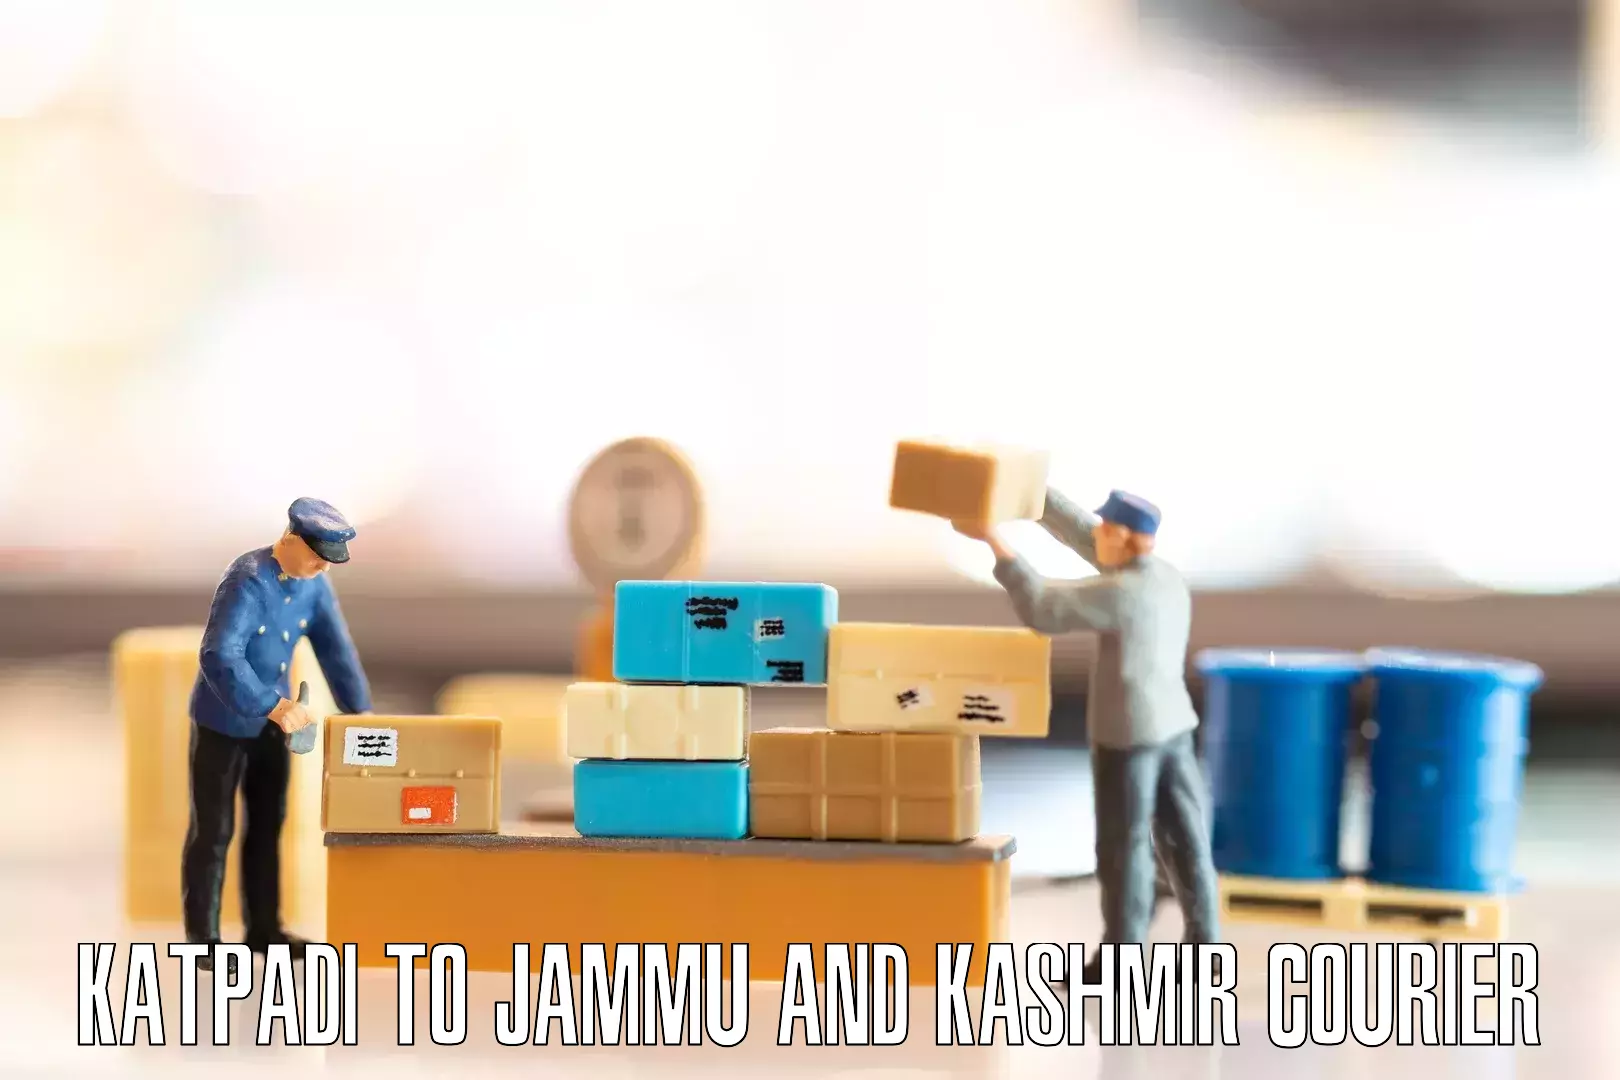 Furniture moving experts Katpadi to Ramban